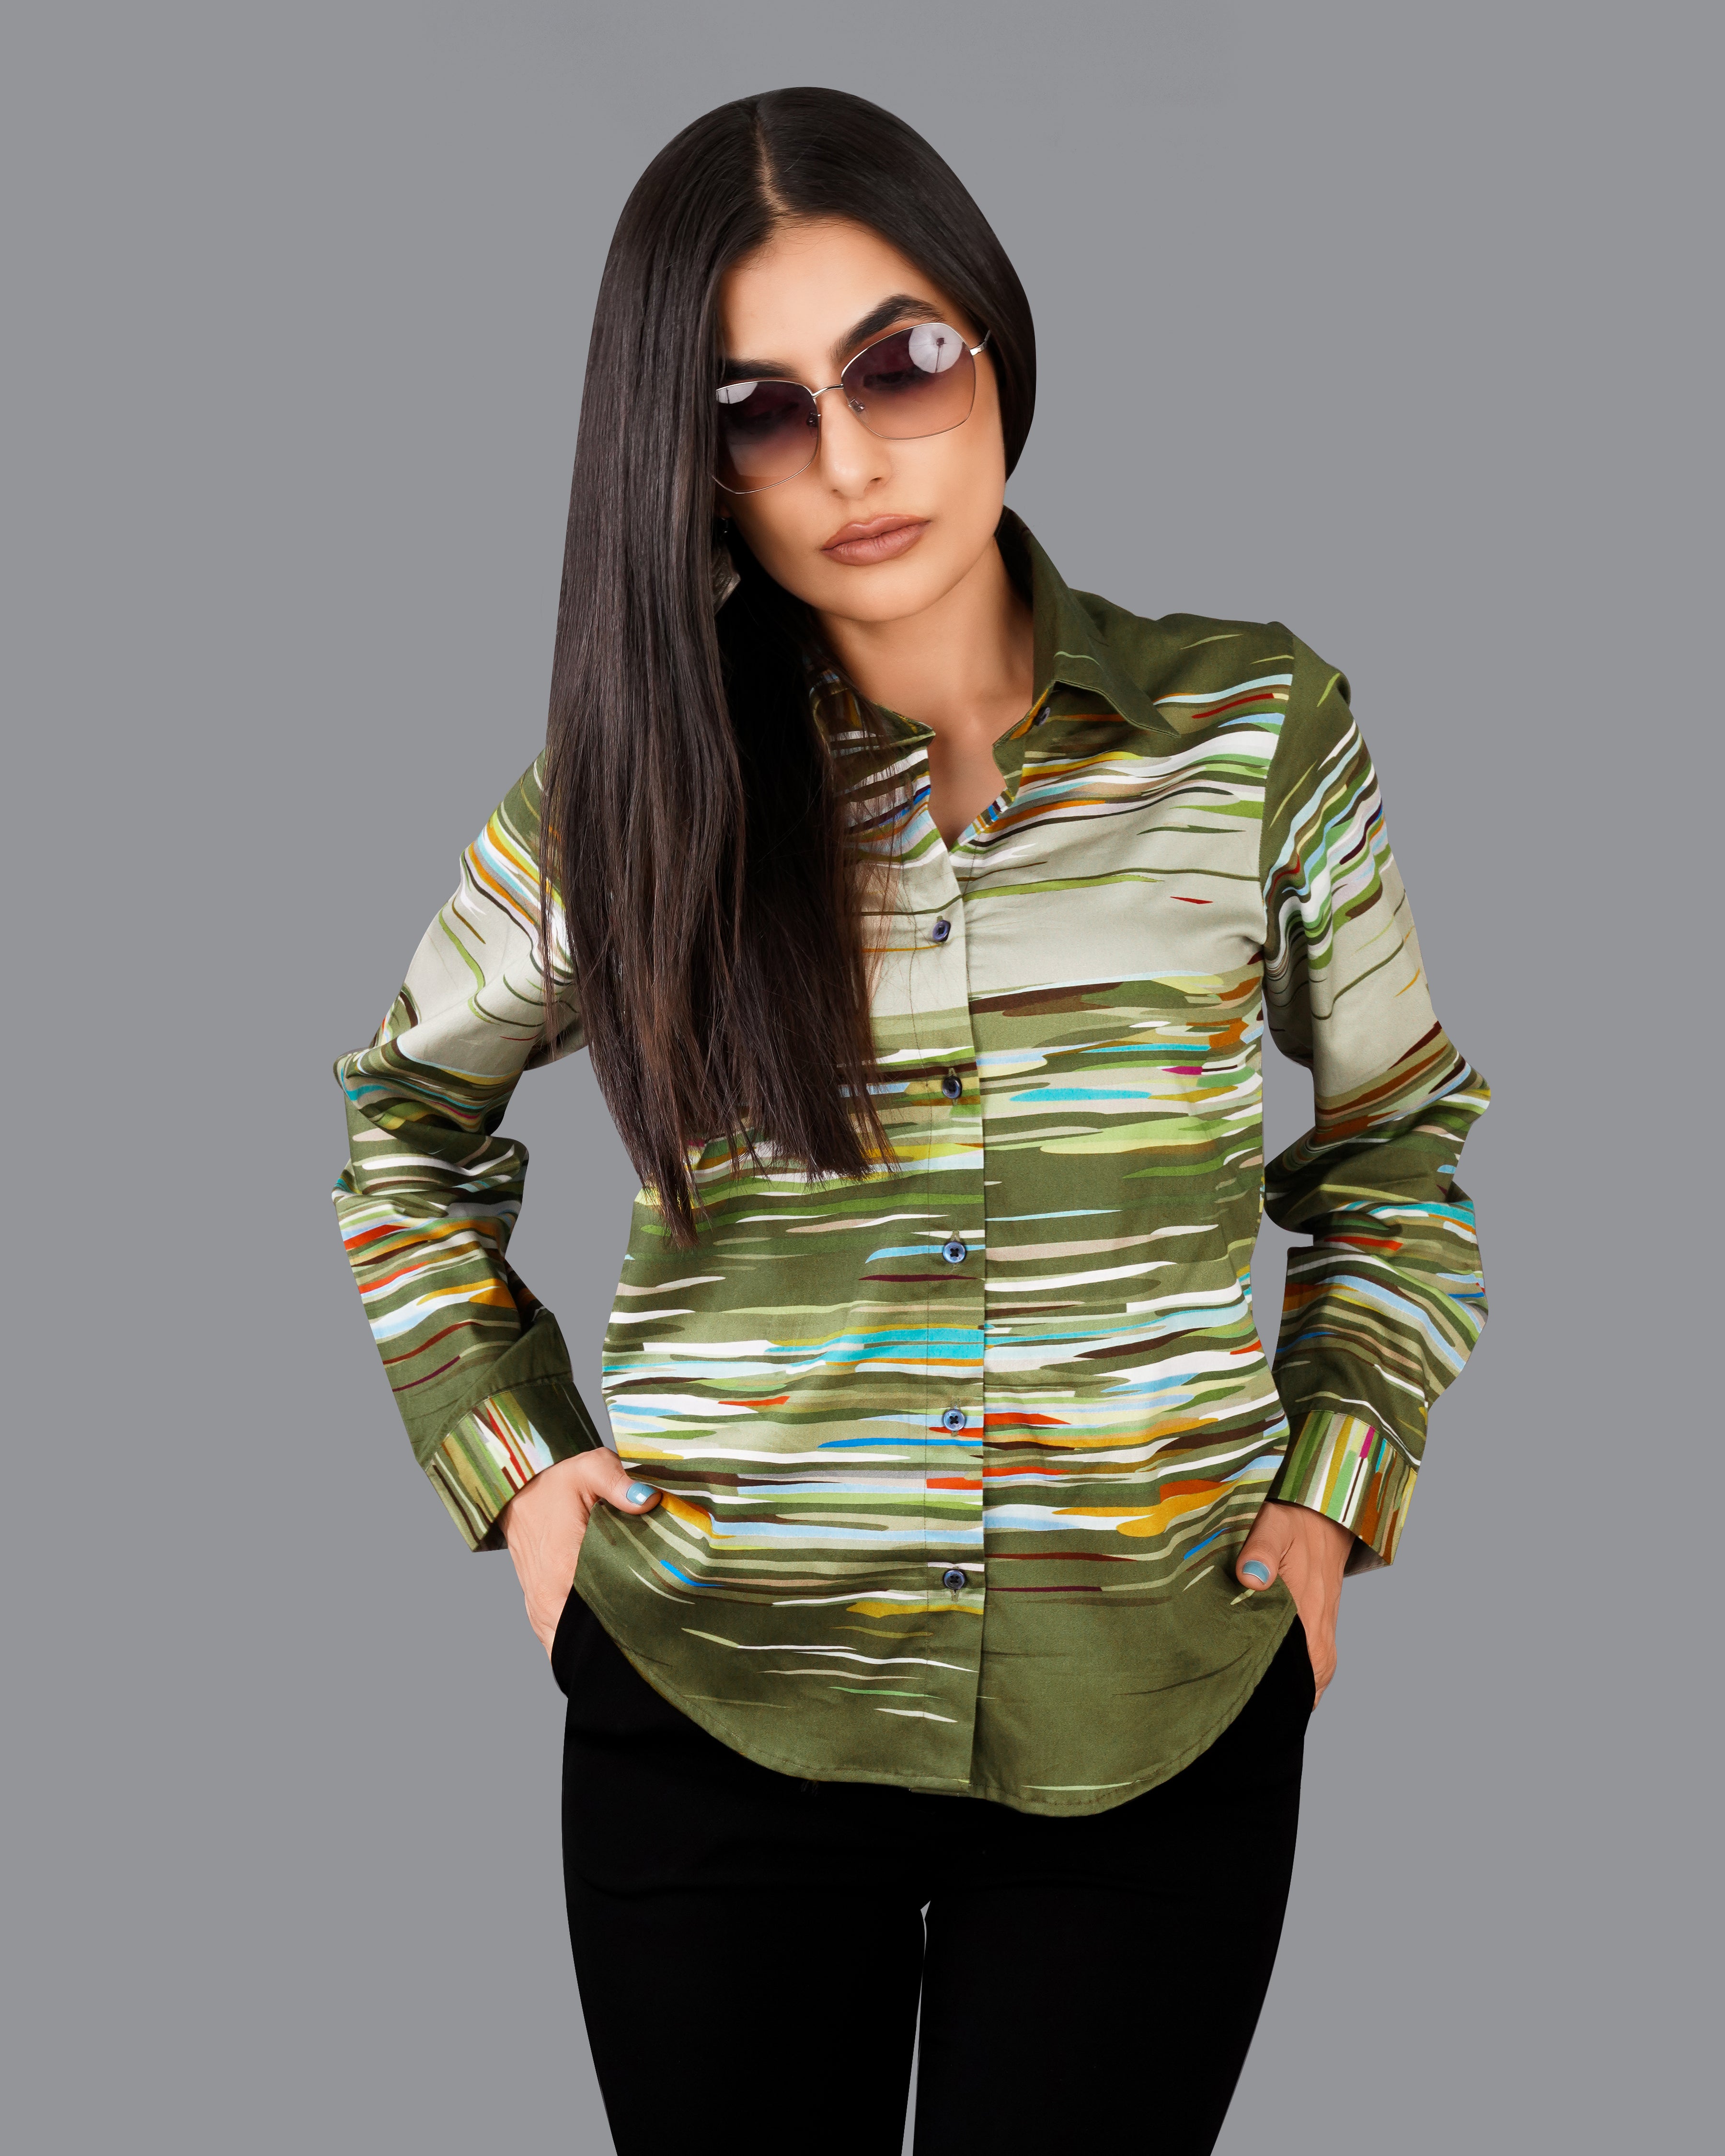 Verdigris Green Multicolour Printed Premium Tencel Shirt WS050-BLE-32, WS050-BLE-34, WS050-BLE-36, WS050-BLE-38, WS050-BLE-40, WS050-BLE-42